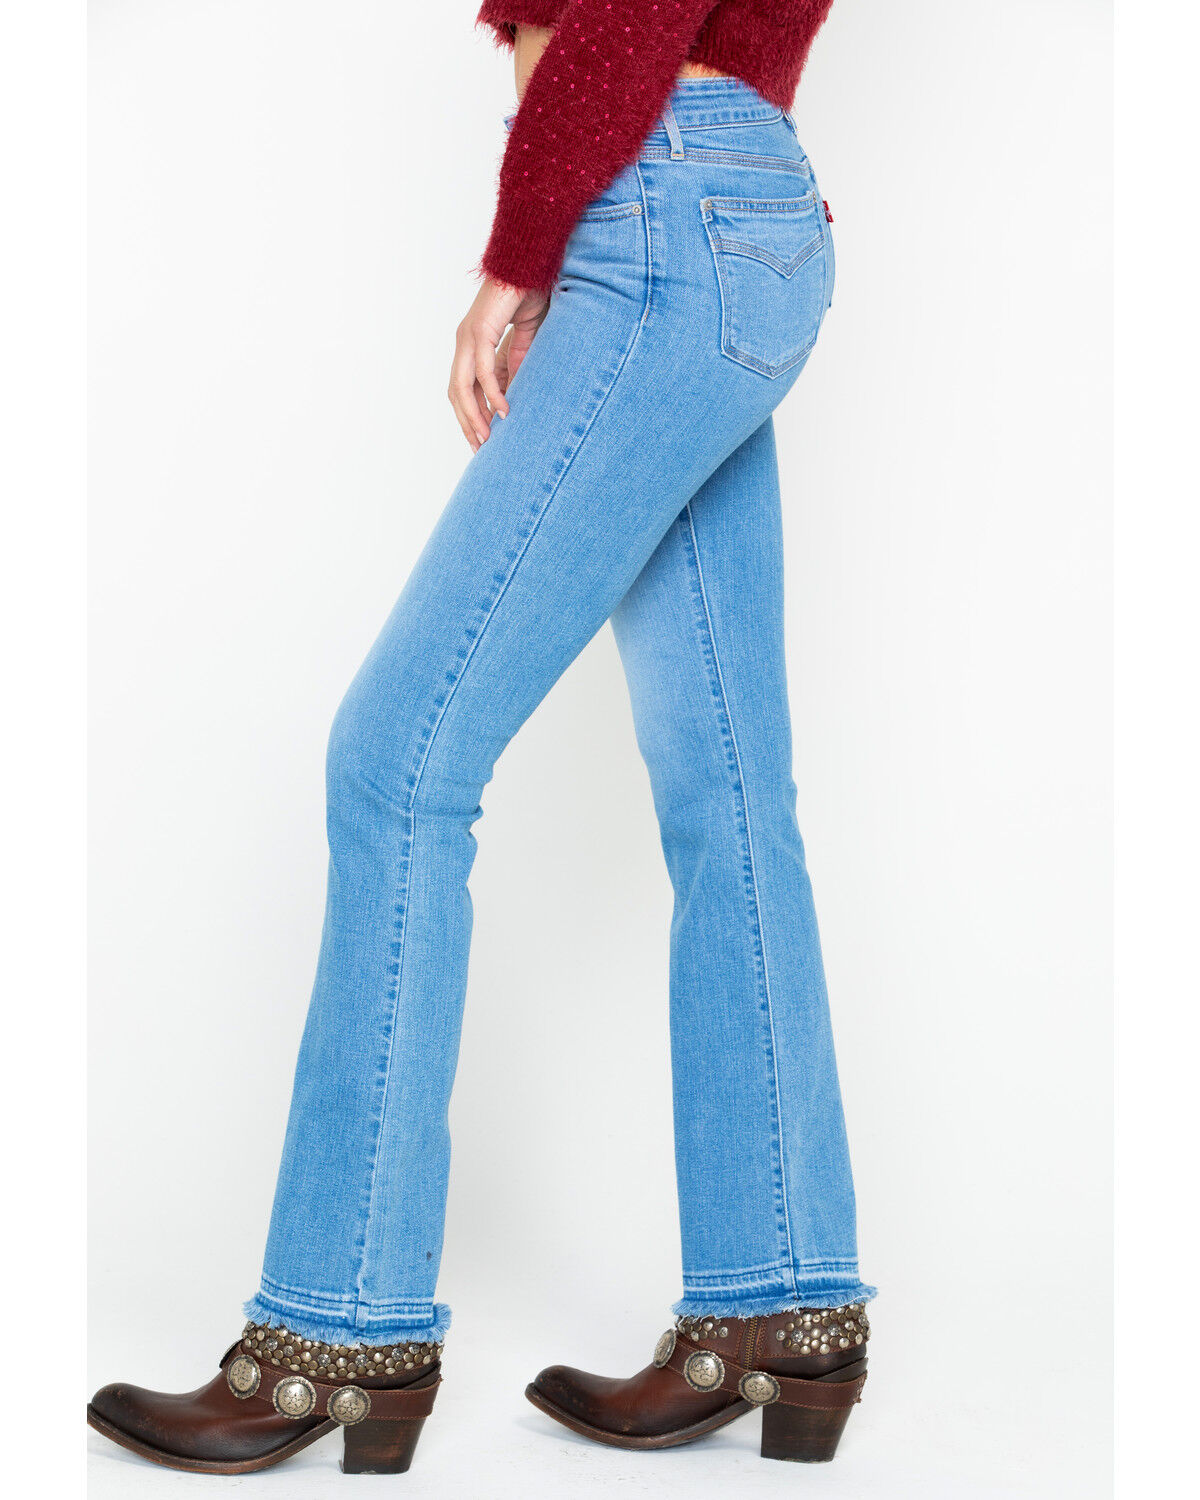 levi's 715 vintage bootcut jeans